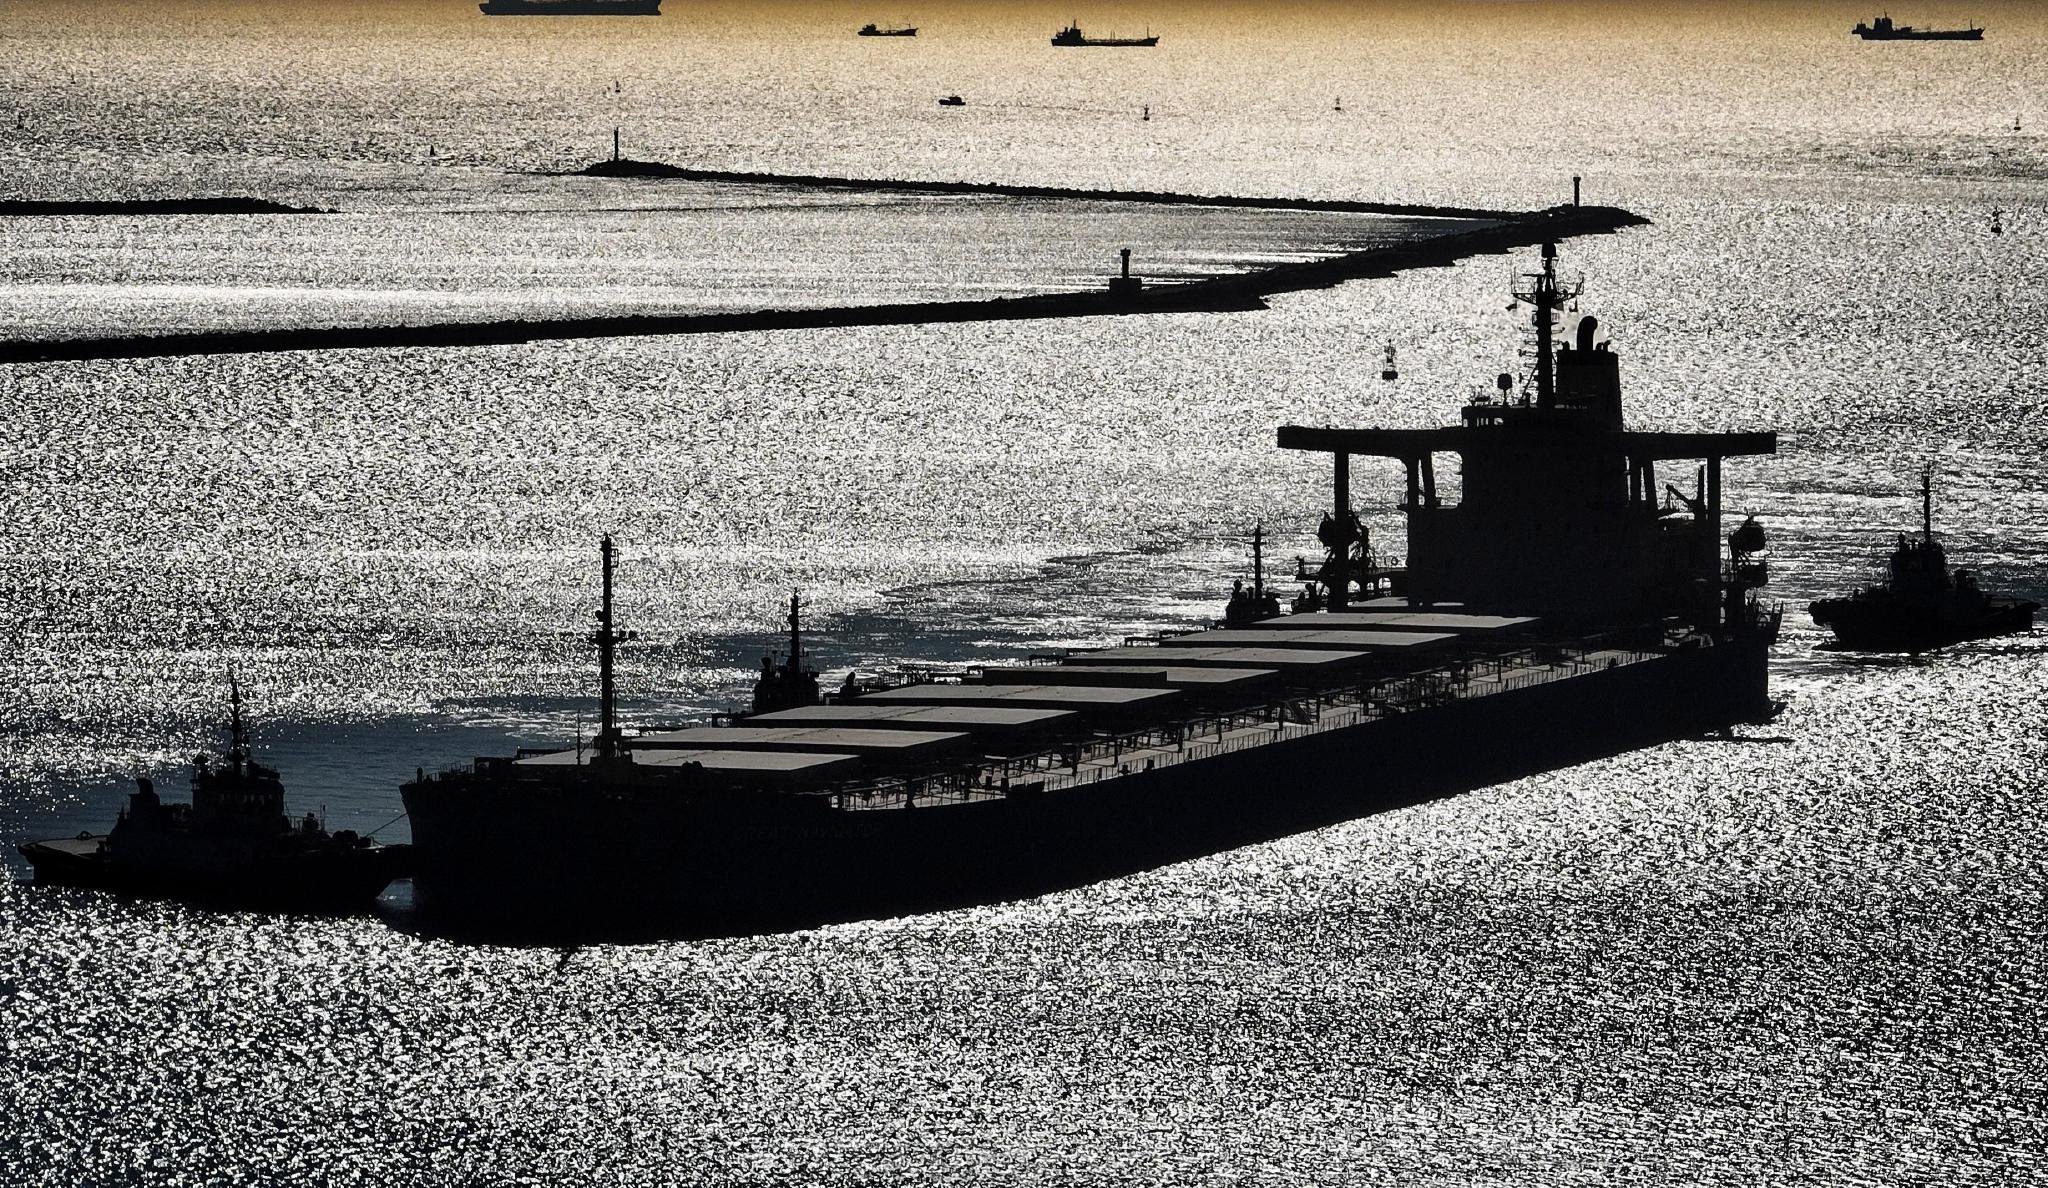 1月15日，一艘轮船在拖轮的协助下向唐山港京唐港区煤炭码头靠泊(无人机照片)。 新华社记者 杨世尧 摄